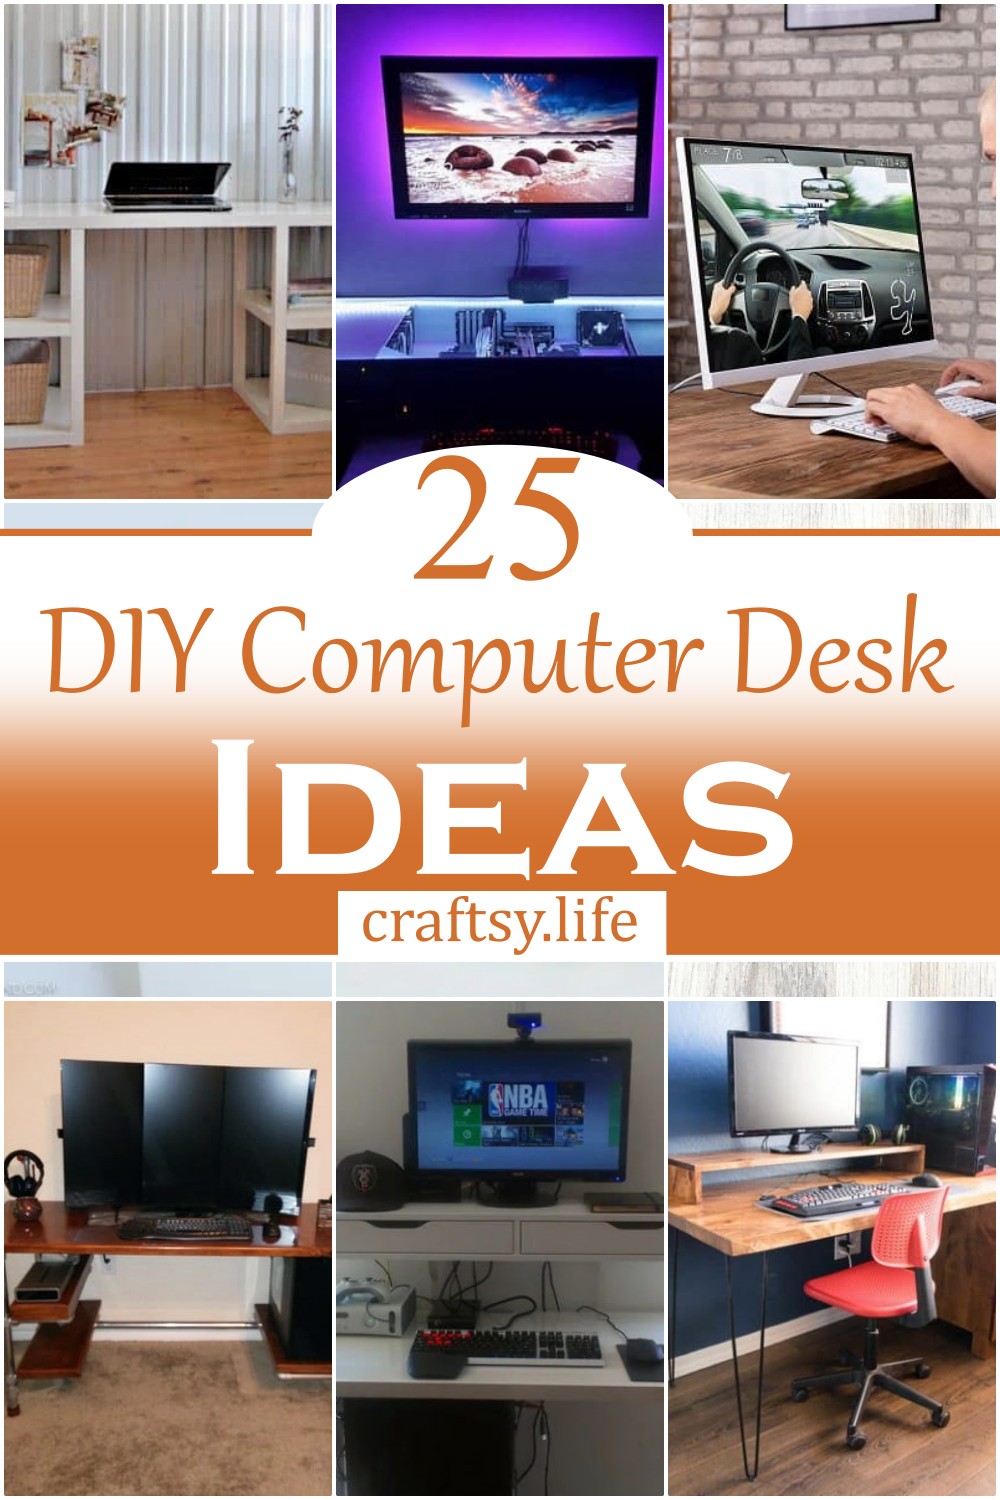 DIY Computer Desk Ideas